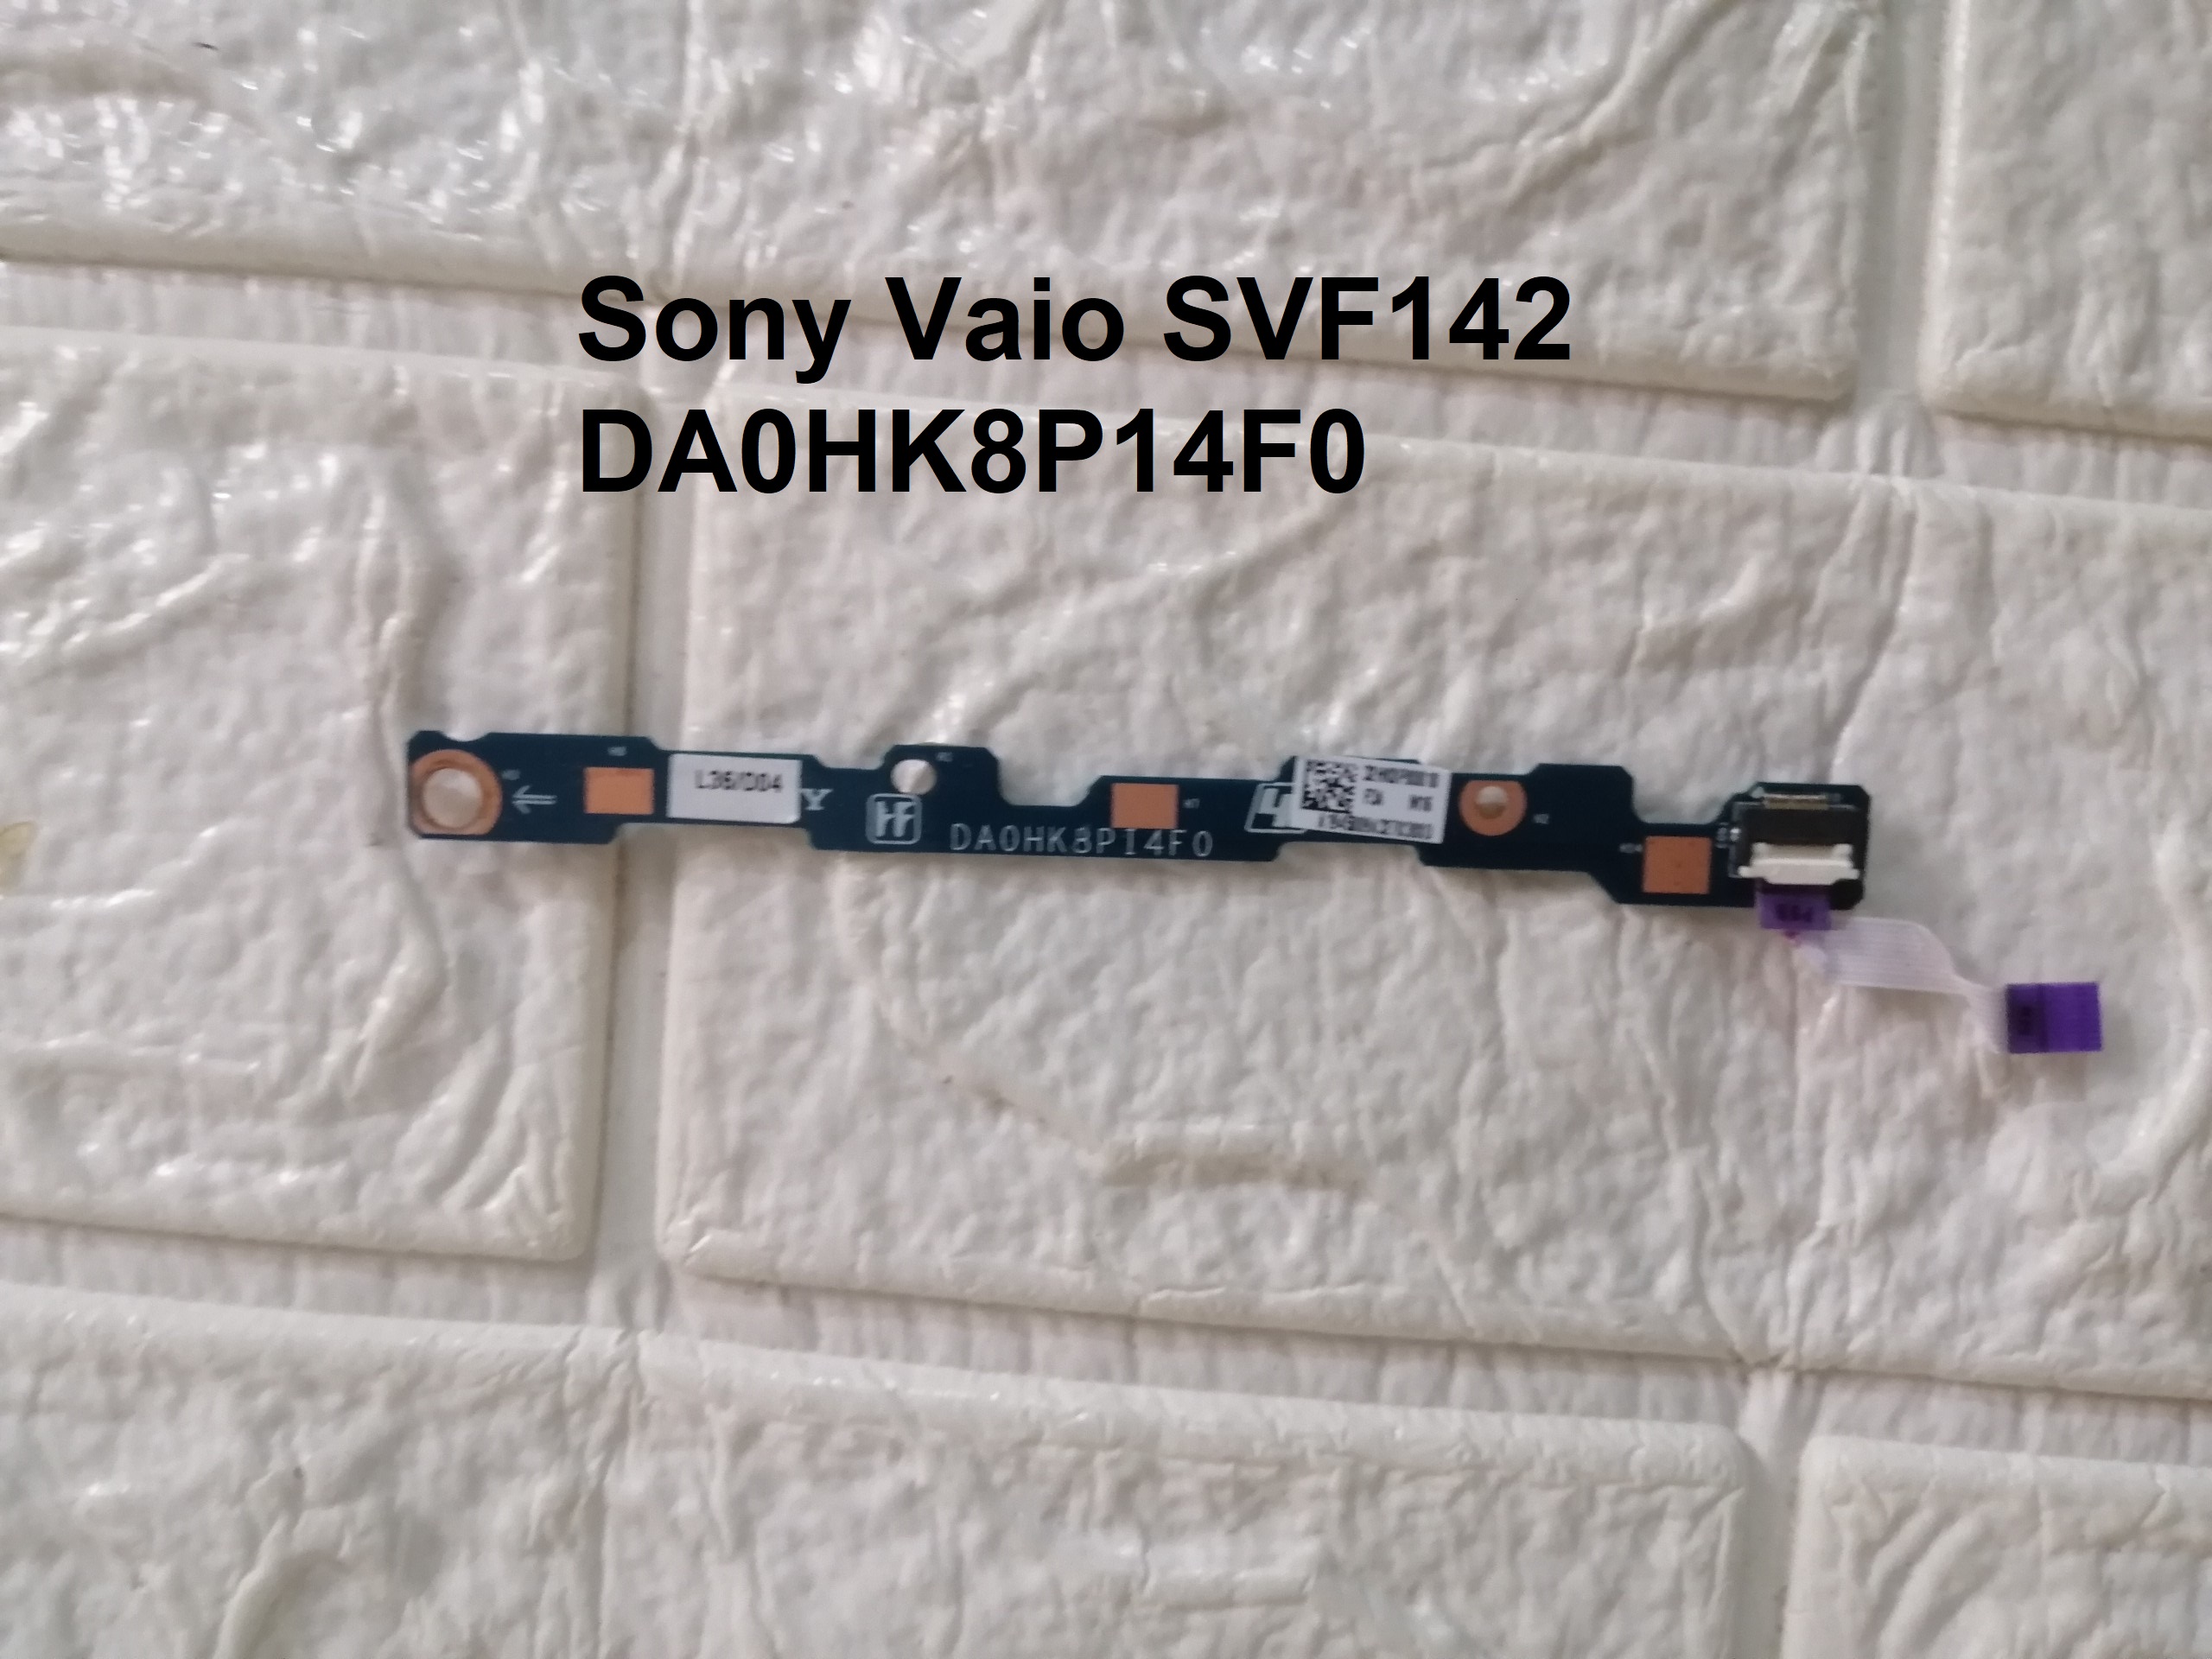 BOARD KÍCH NGUỒN LAPTOP Sony Vaio SVF142 ( DA0HK8P14F0 )